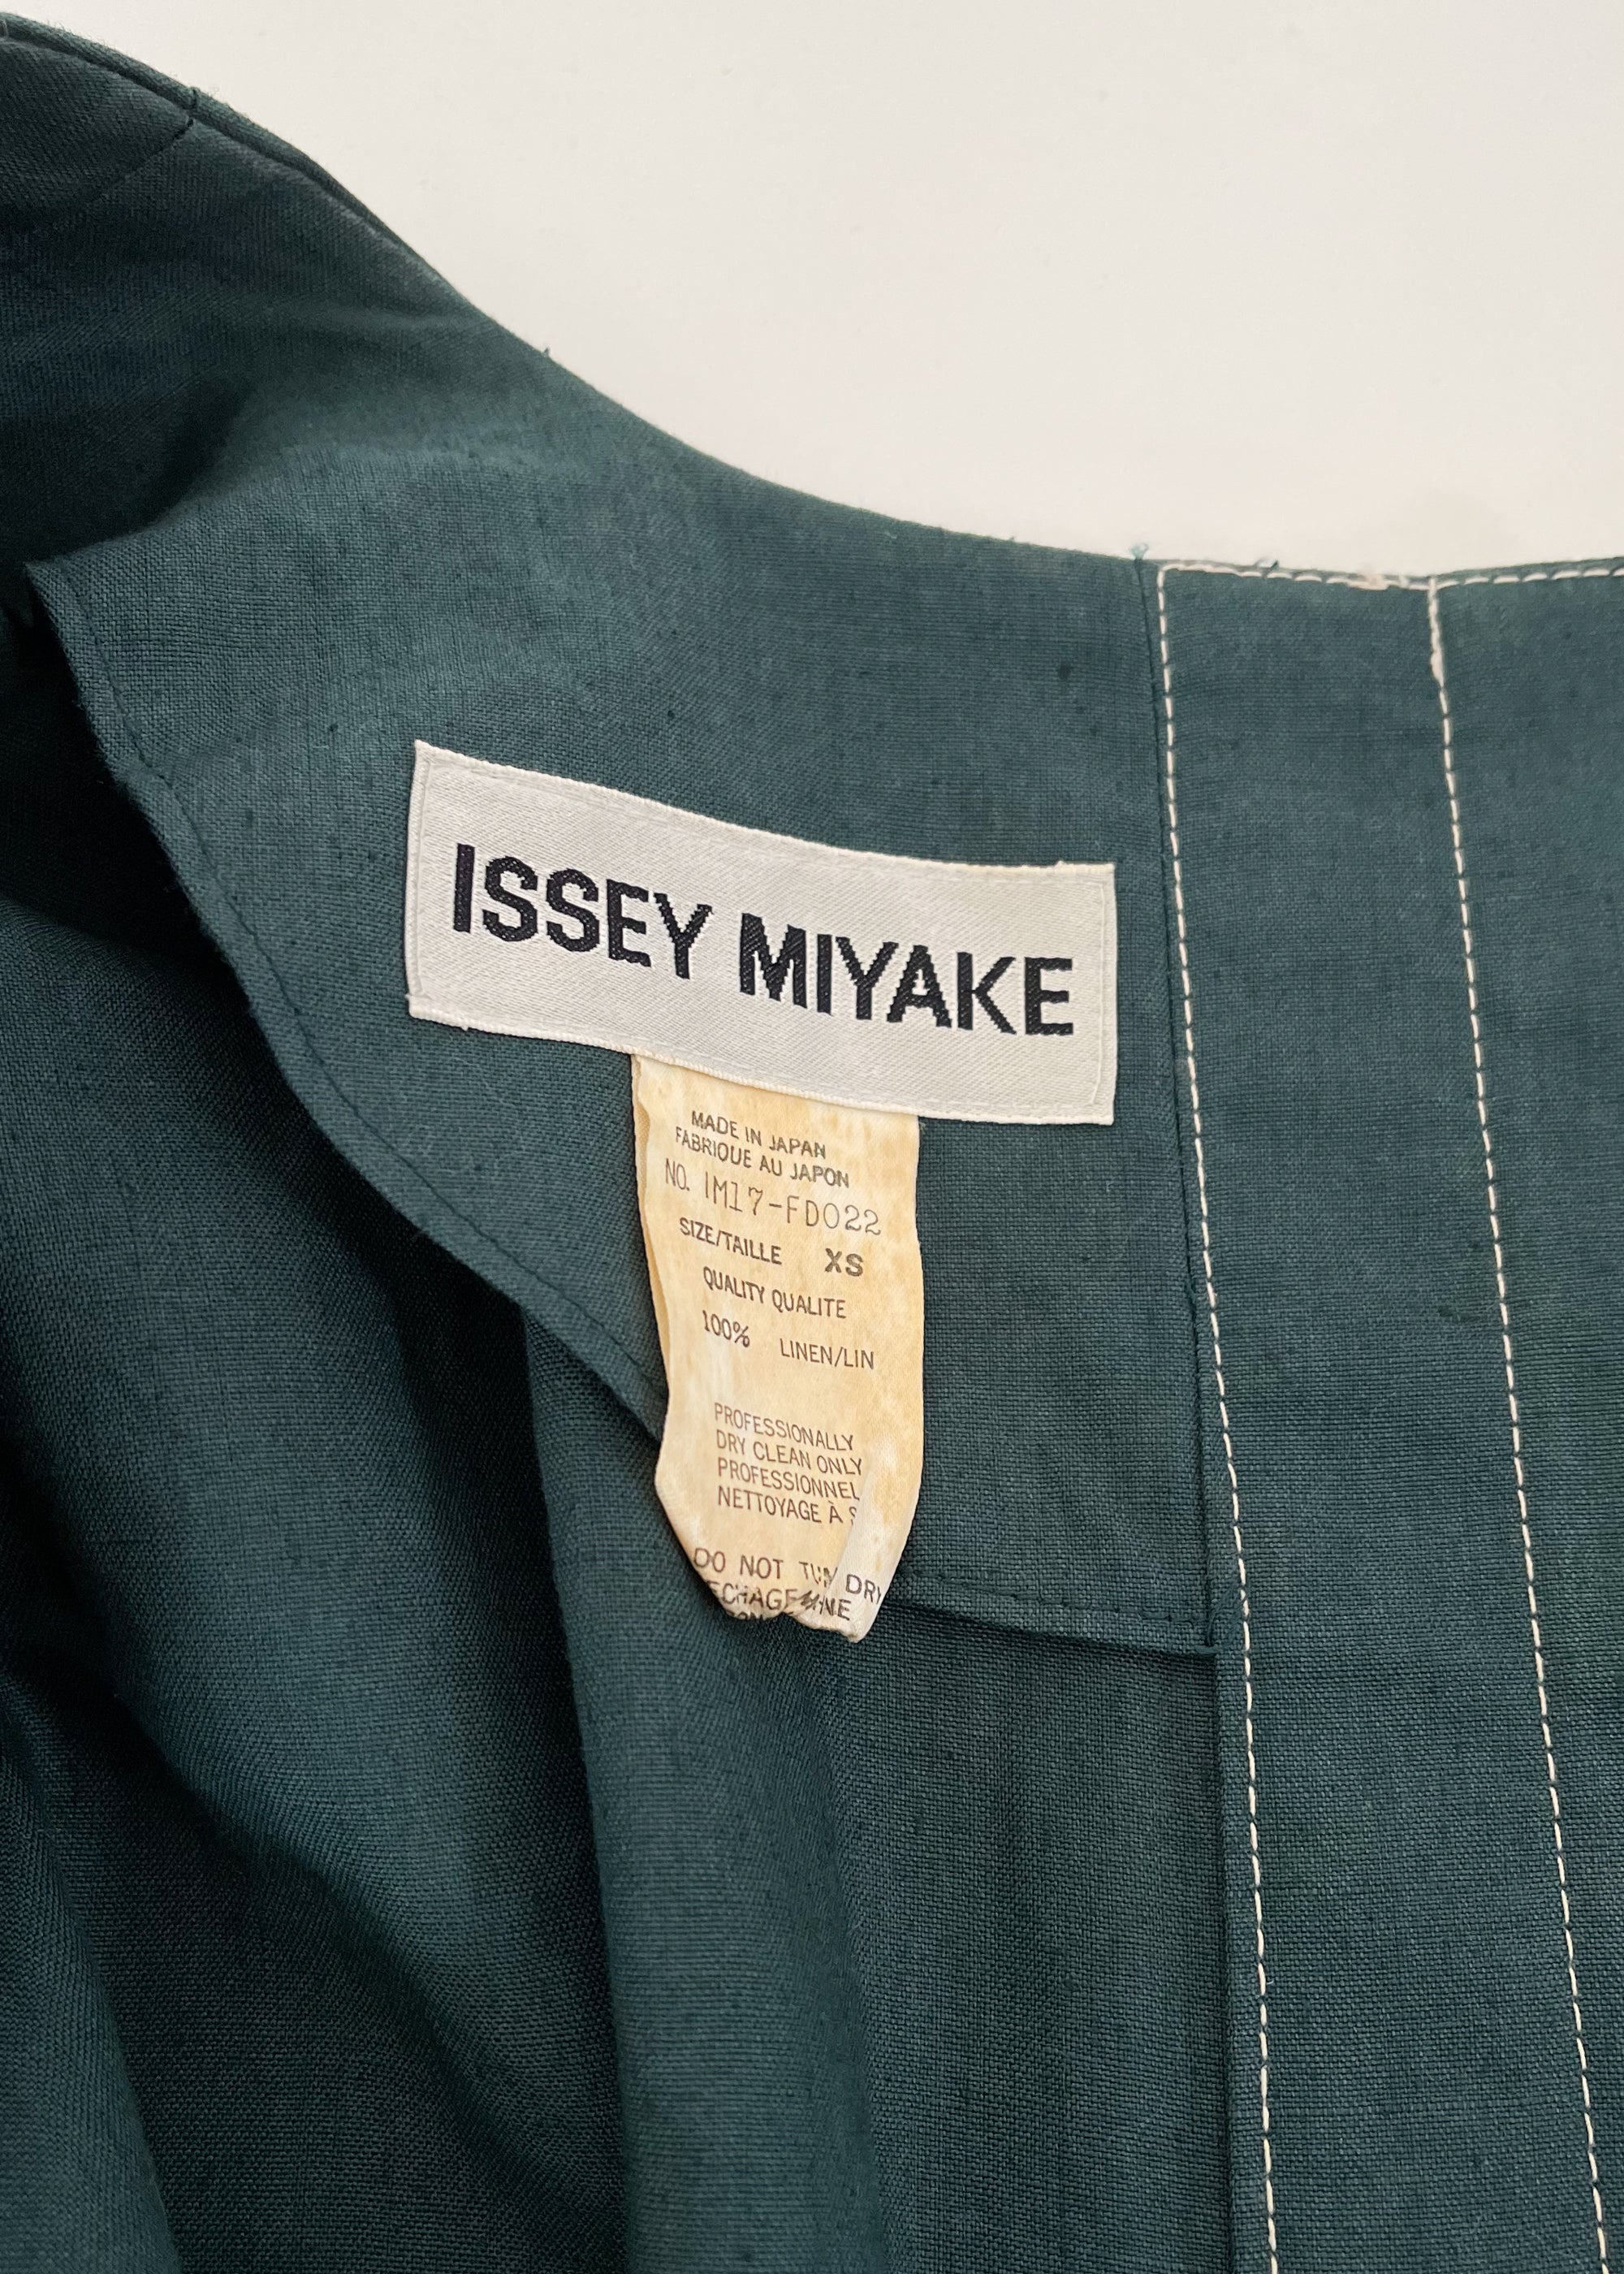 Vintage Issey Miyake Jacket Spring 1991